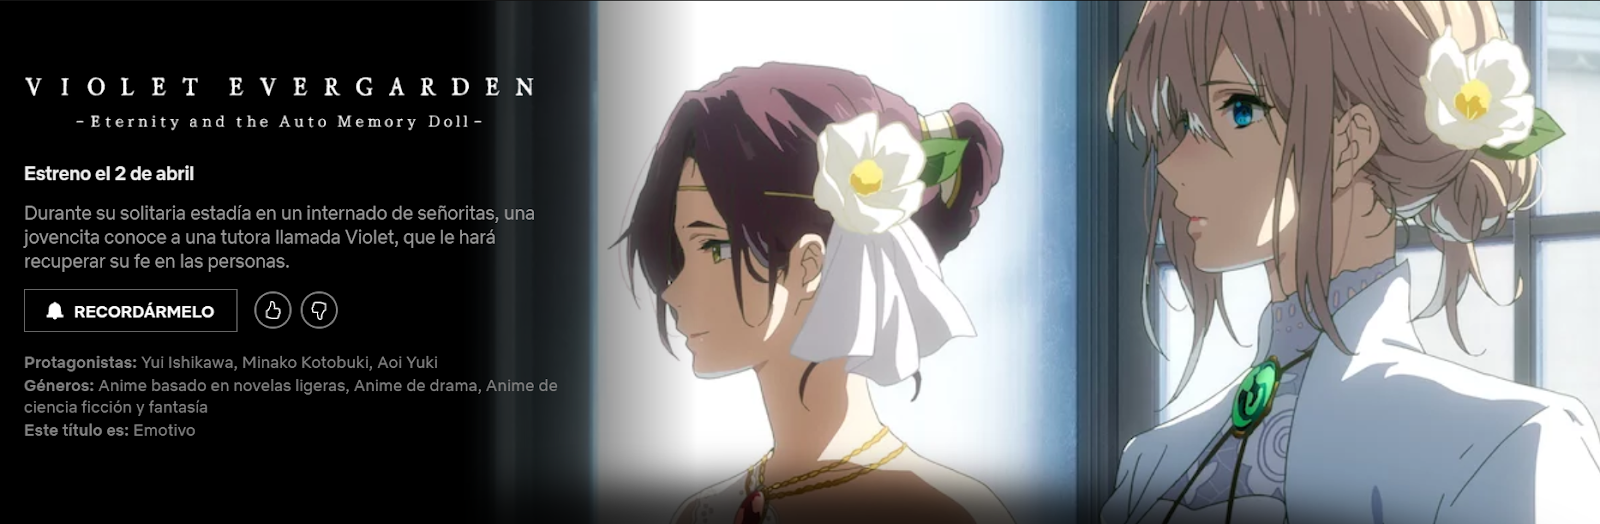 Guía de estrenos anime: ¡Violet Evergarden llega a los cines!